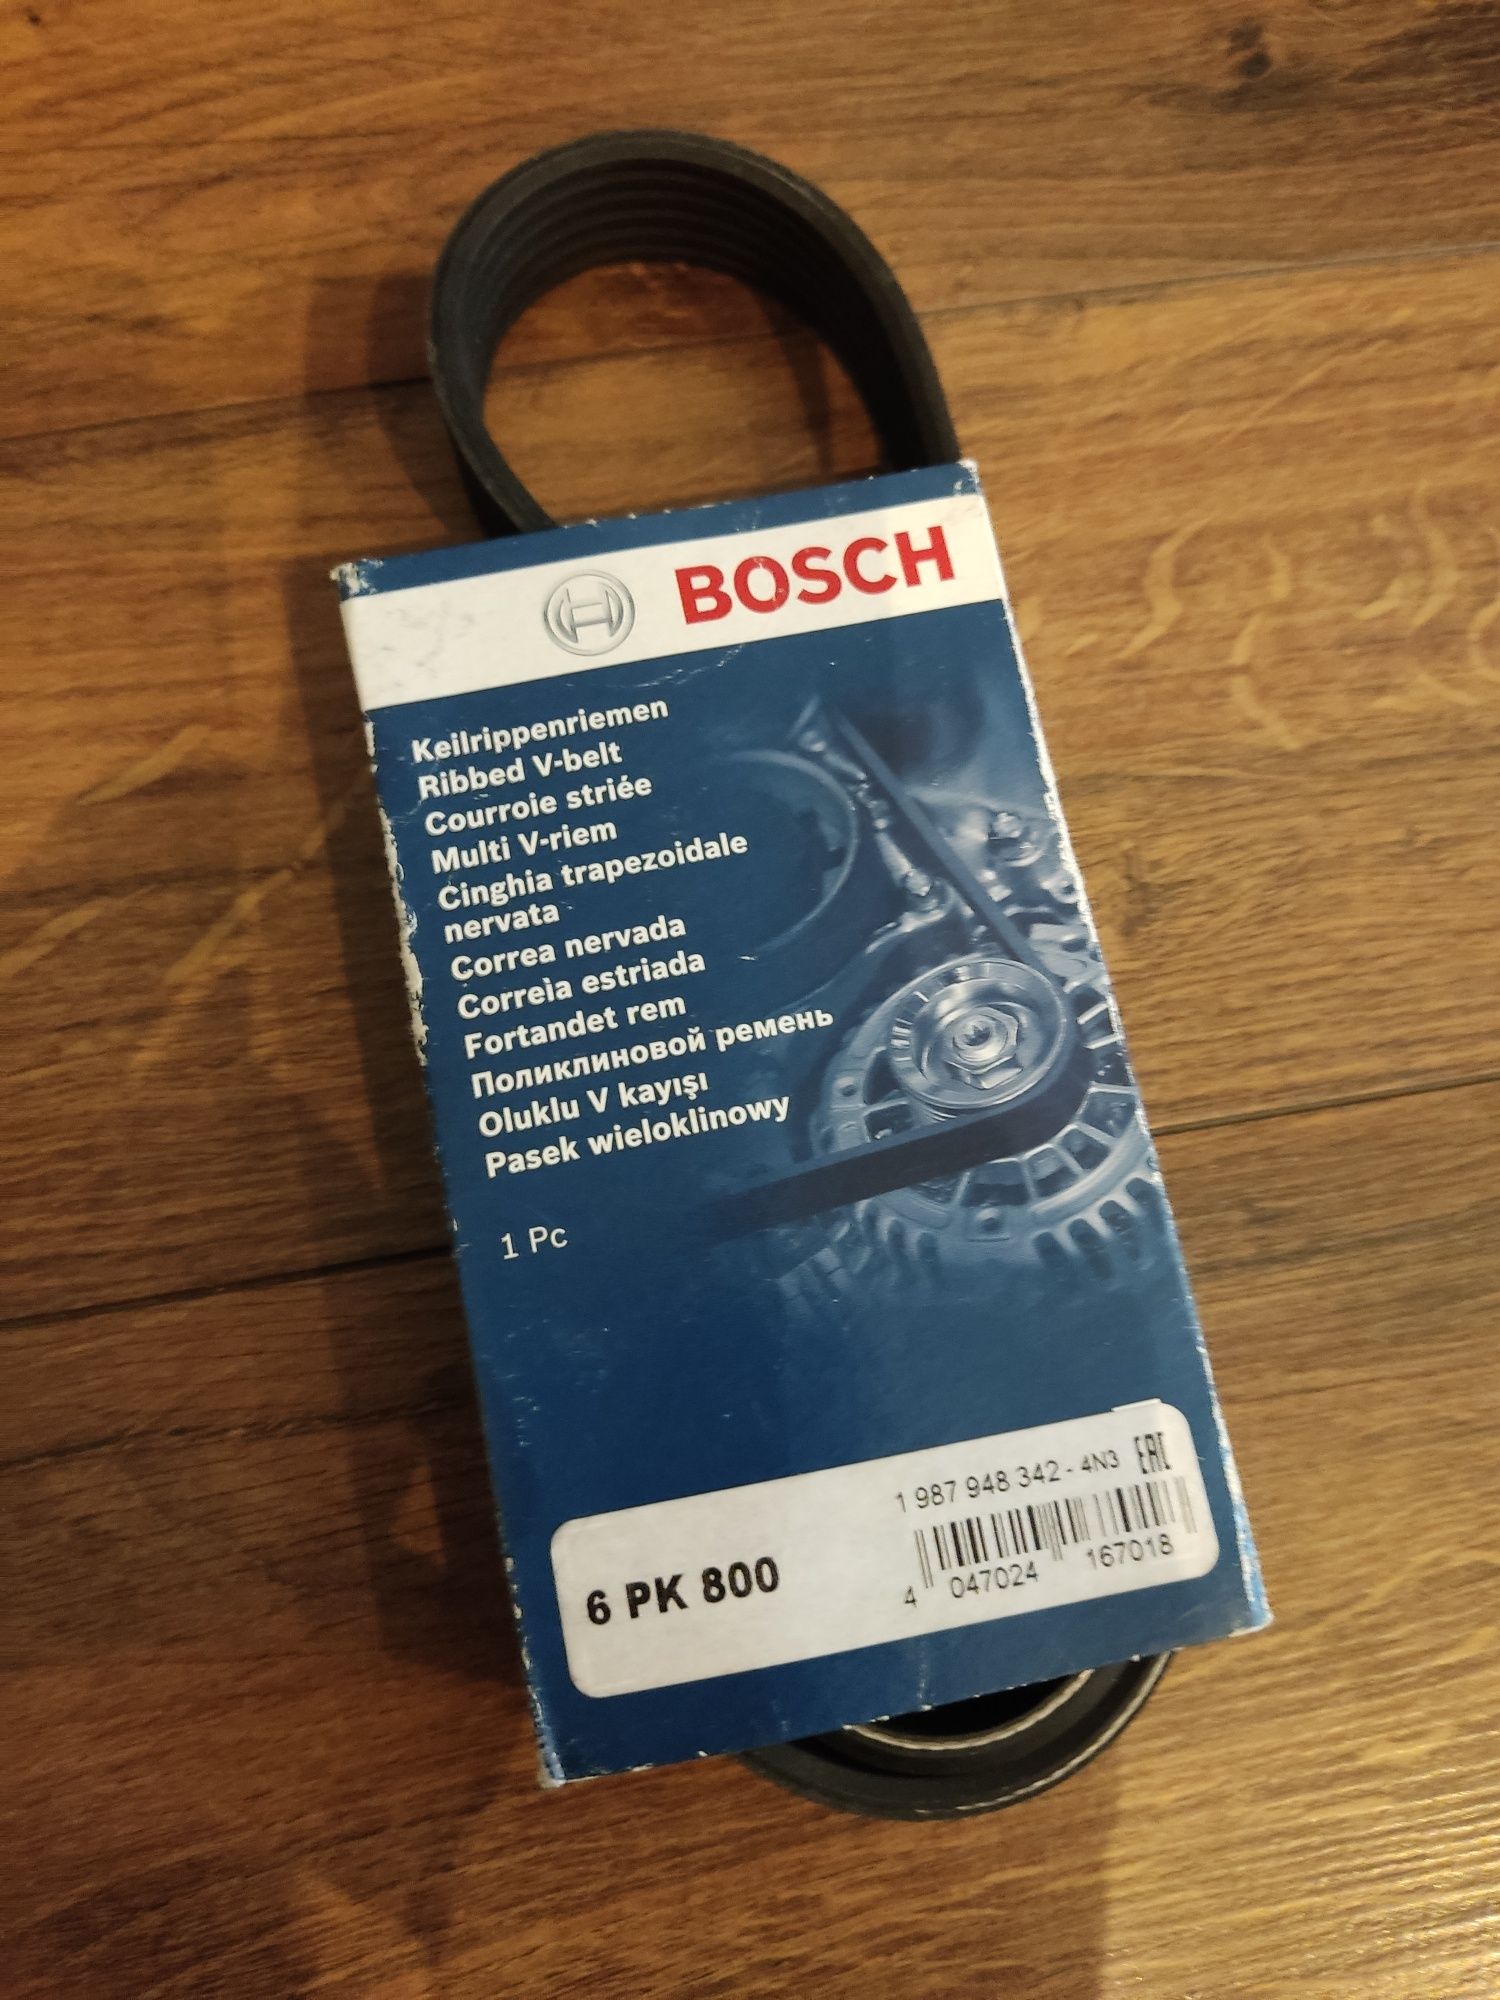 Pasek wieloklinowy Bosch